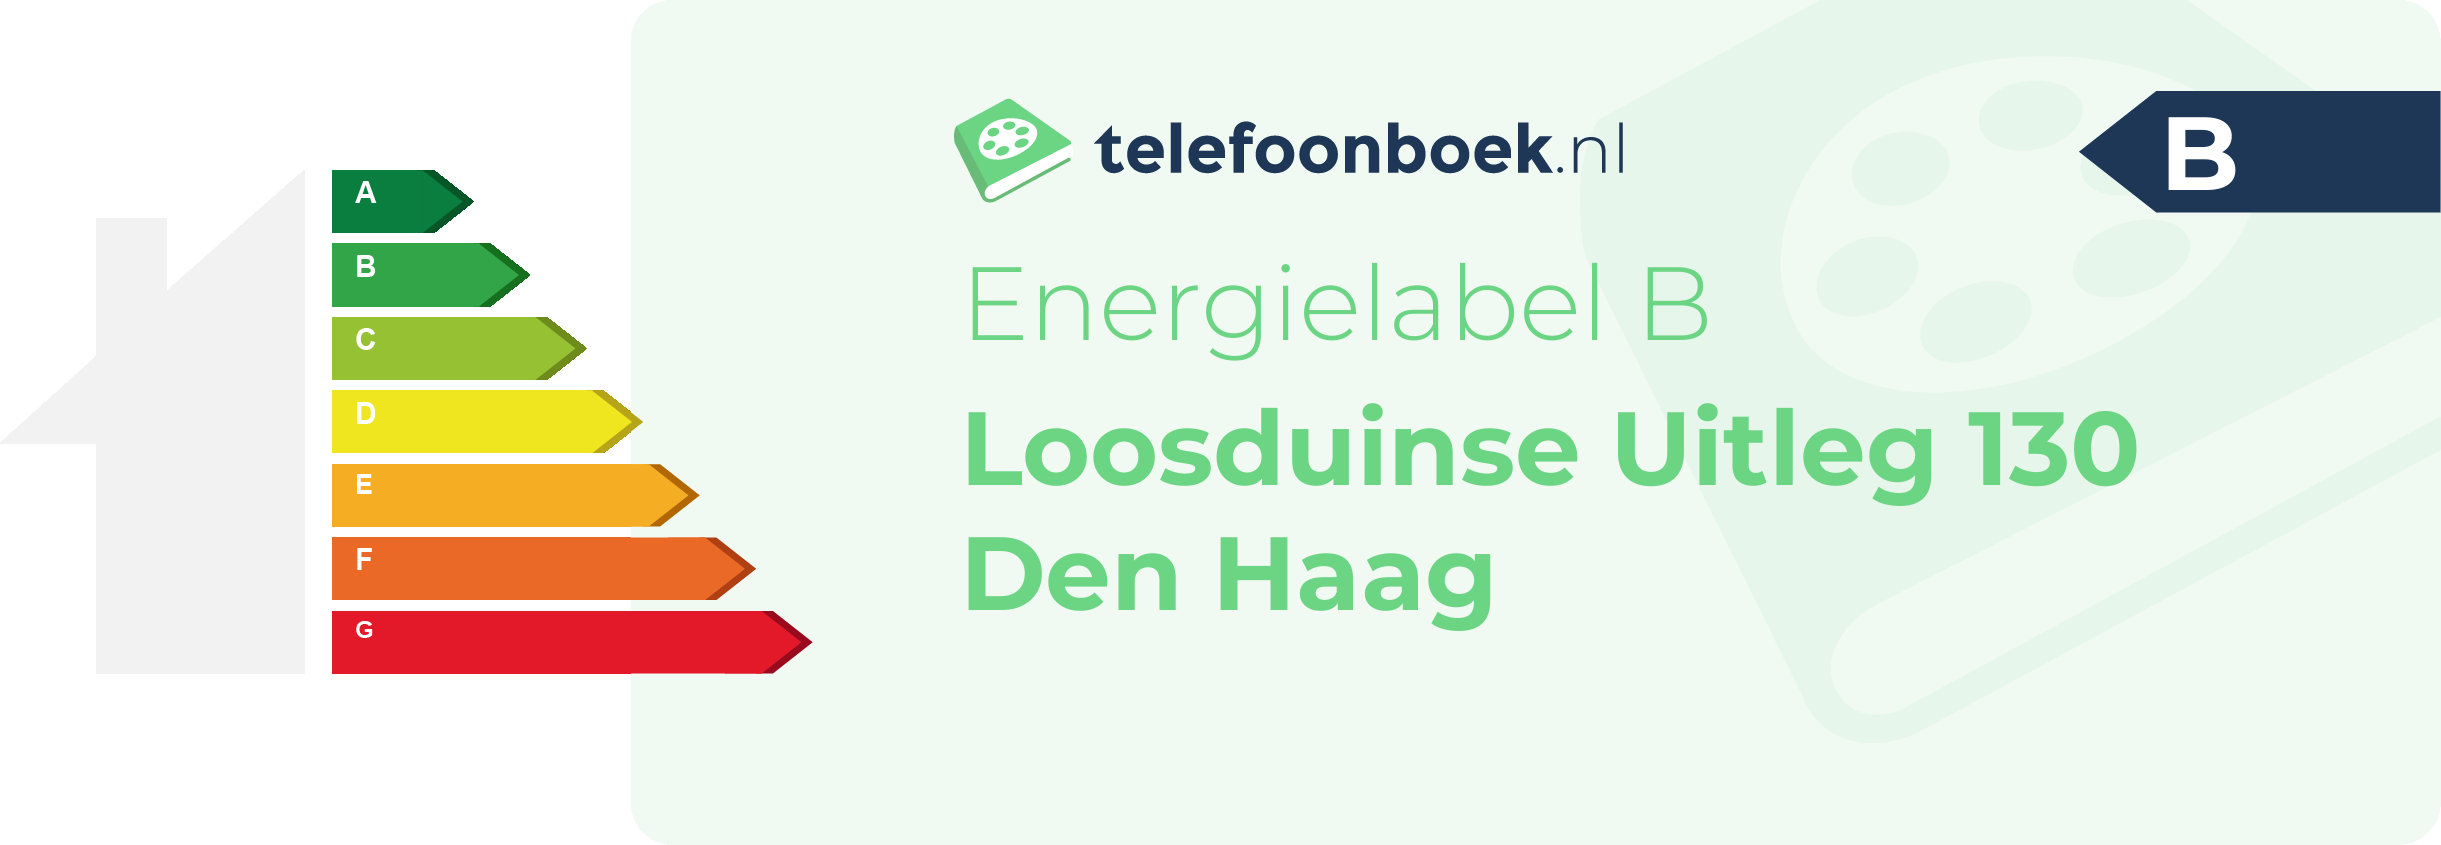 Energielabel Loosduinse Uitleg 130 Den Haag